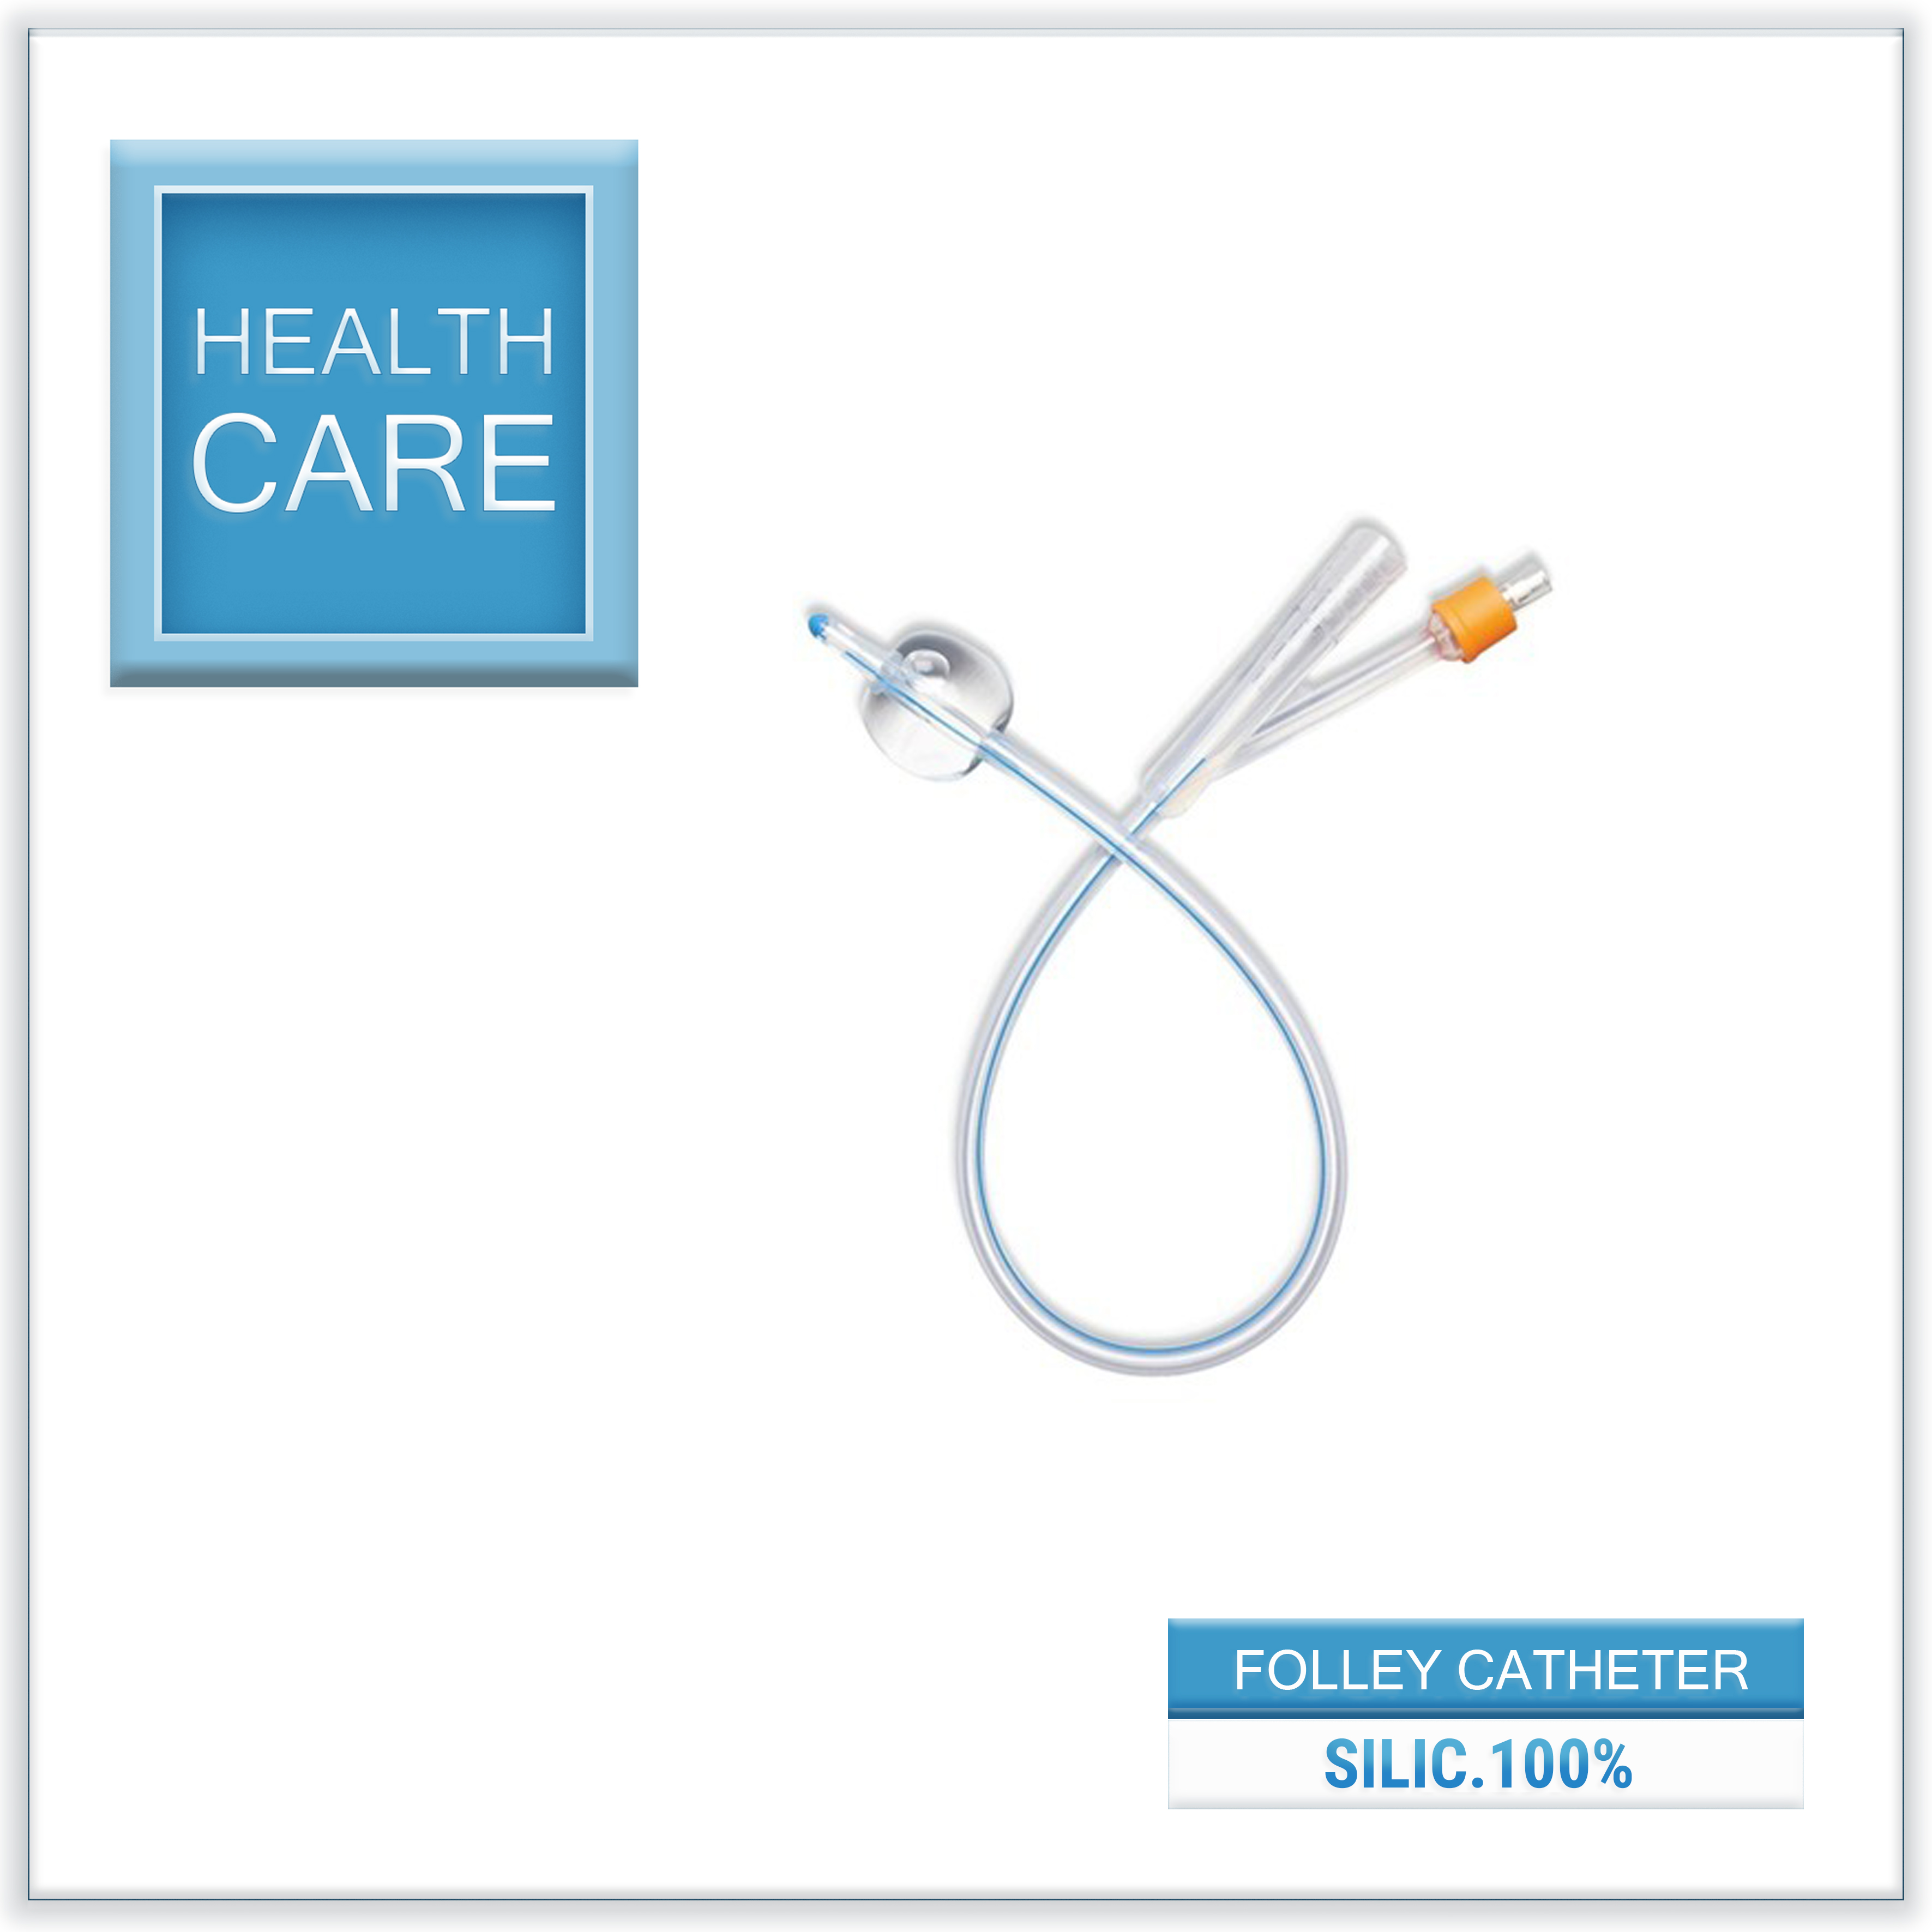 Foley Catheter - Silicone 100%